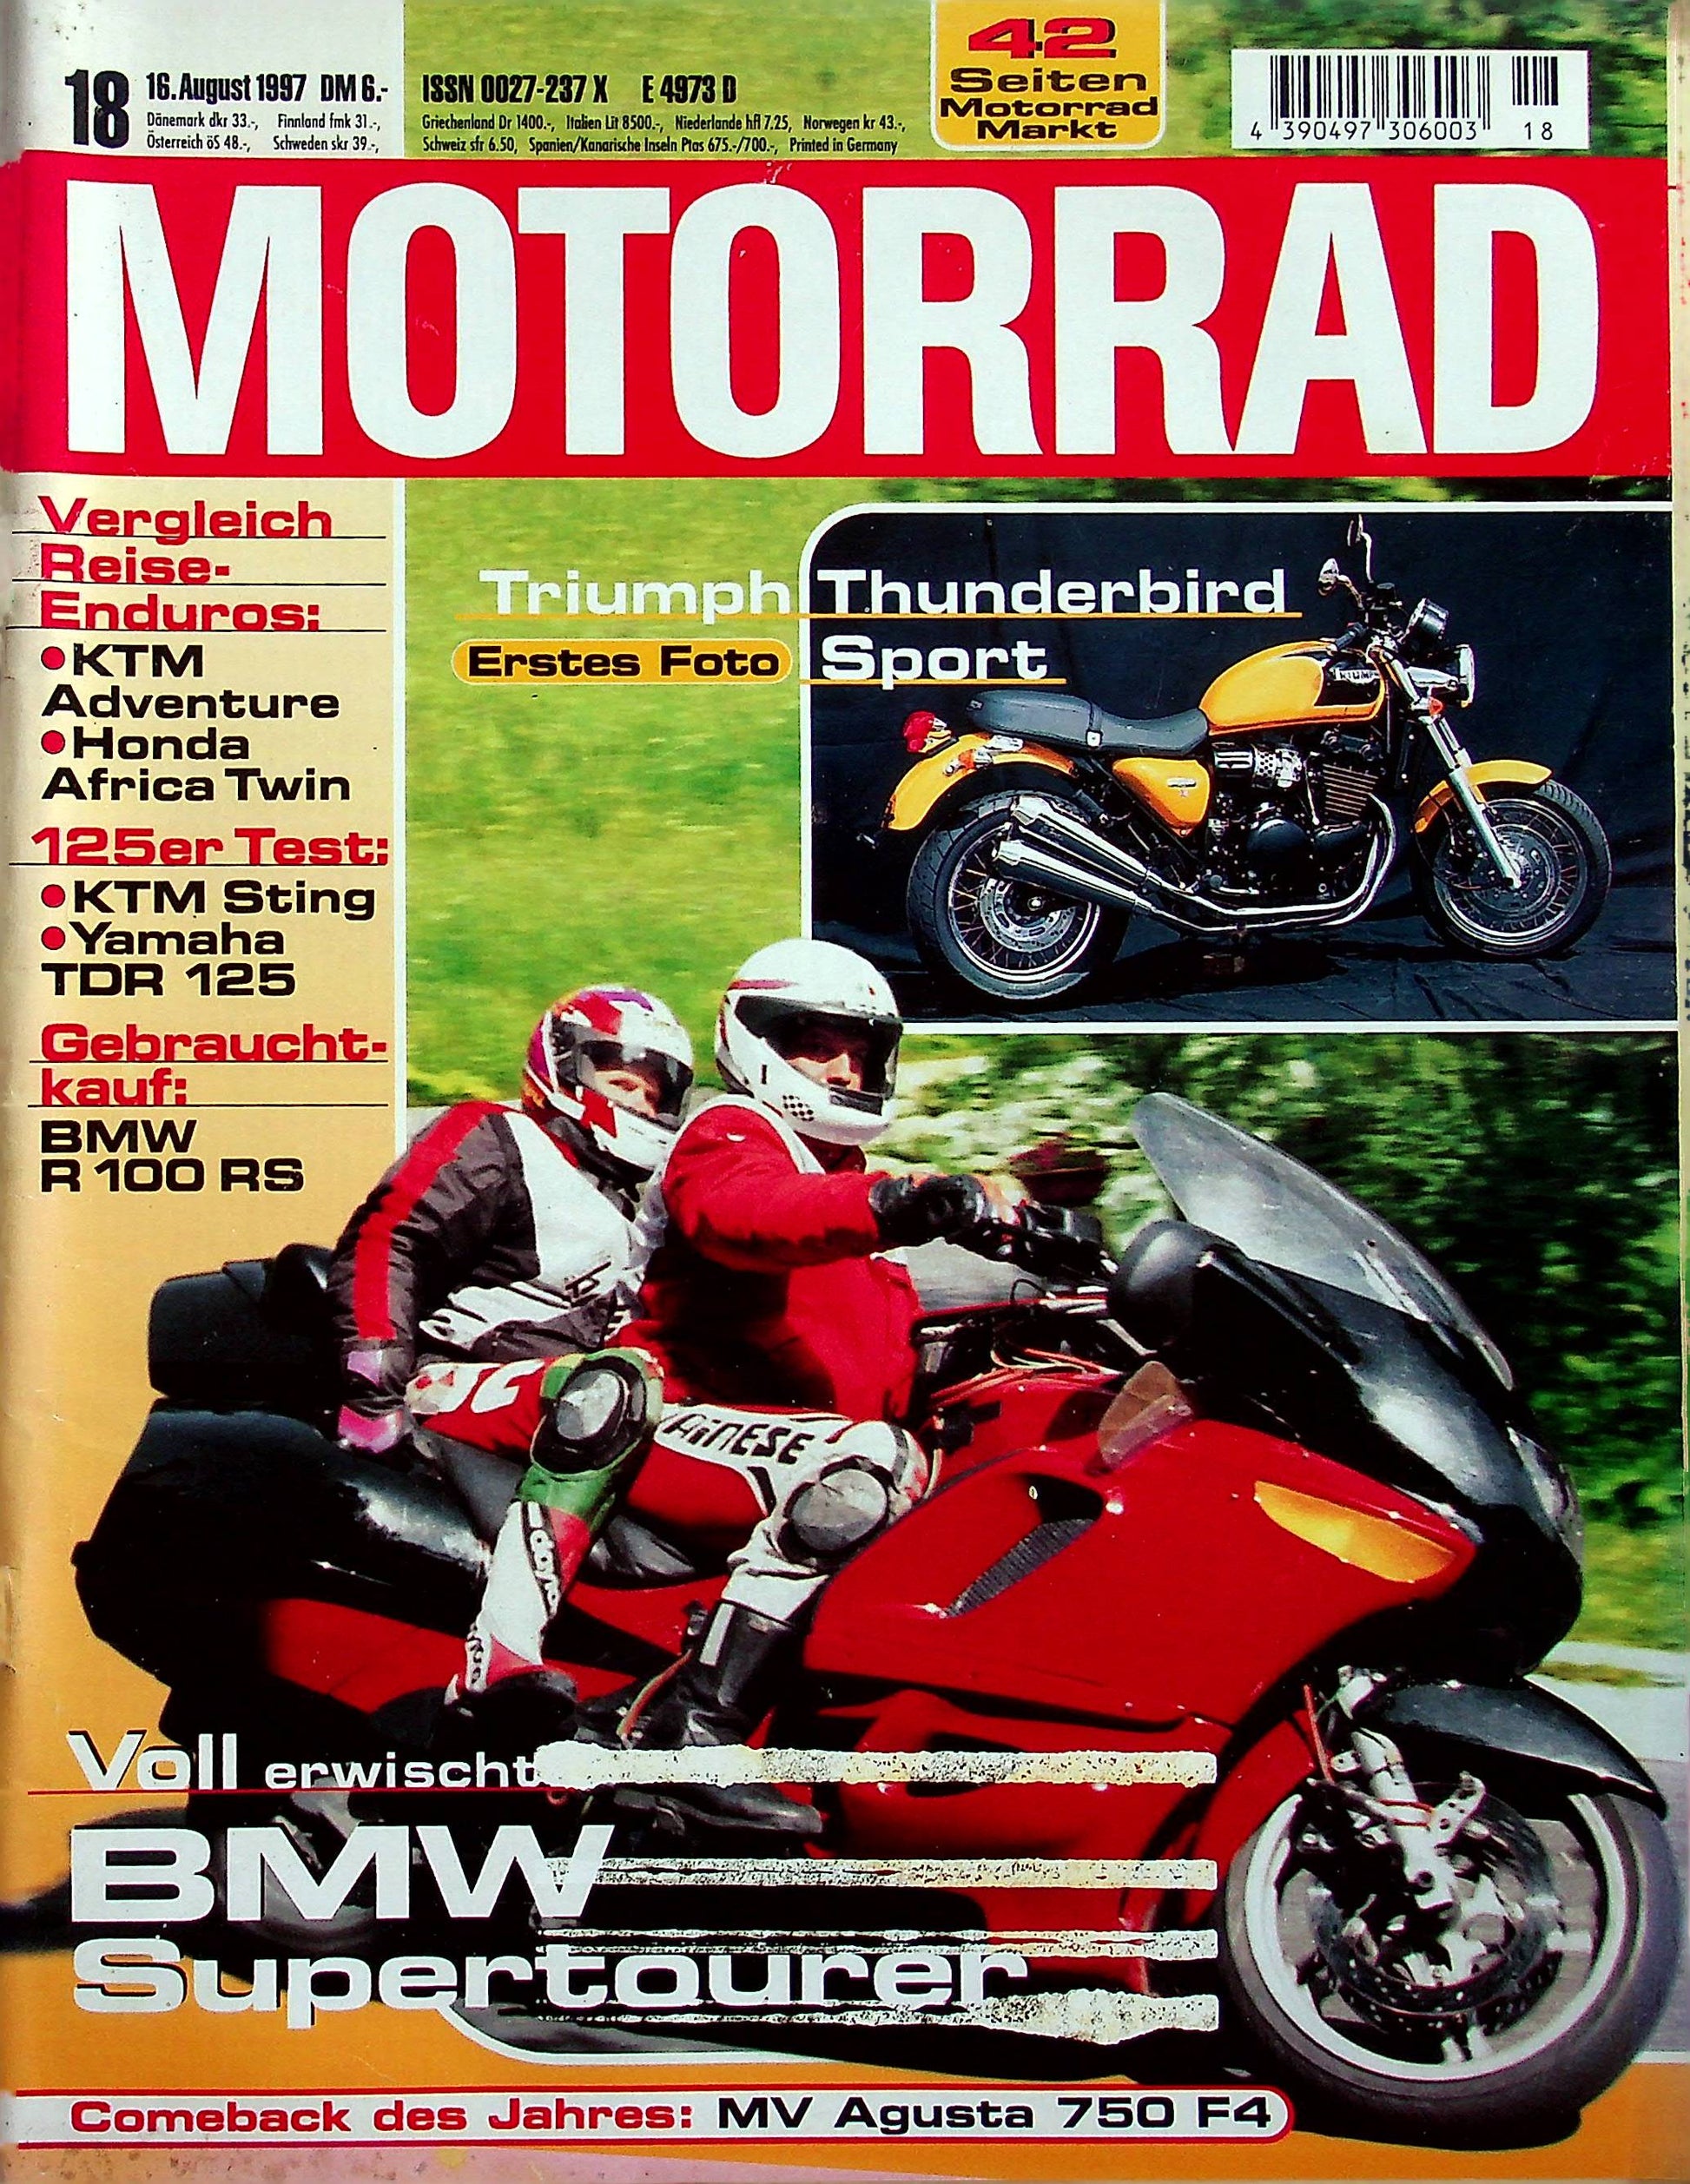 Motorrad 18/1997